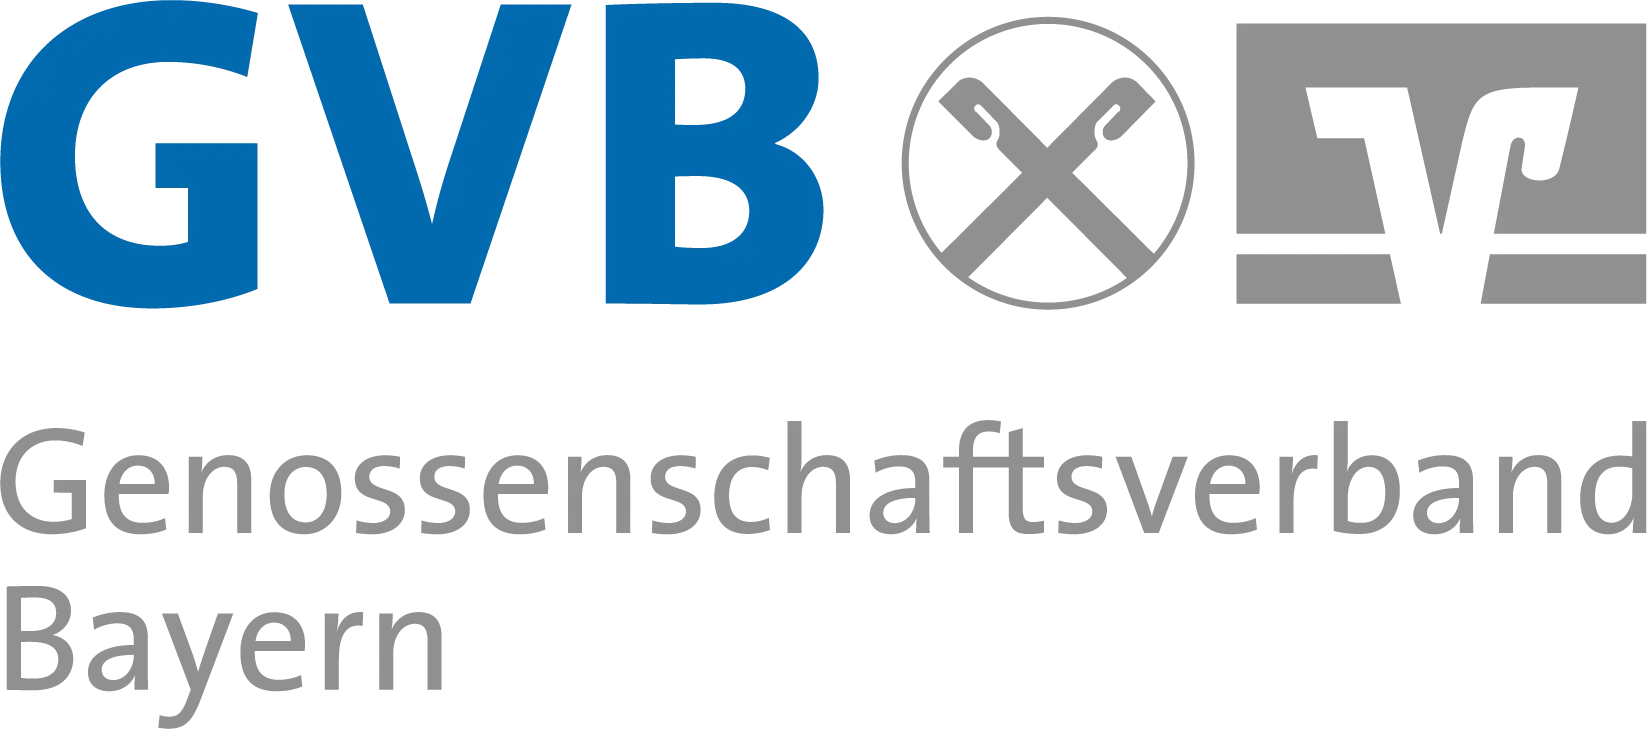 GVB_Logo